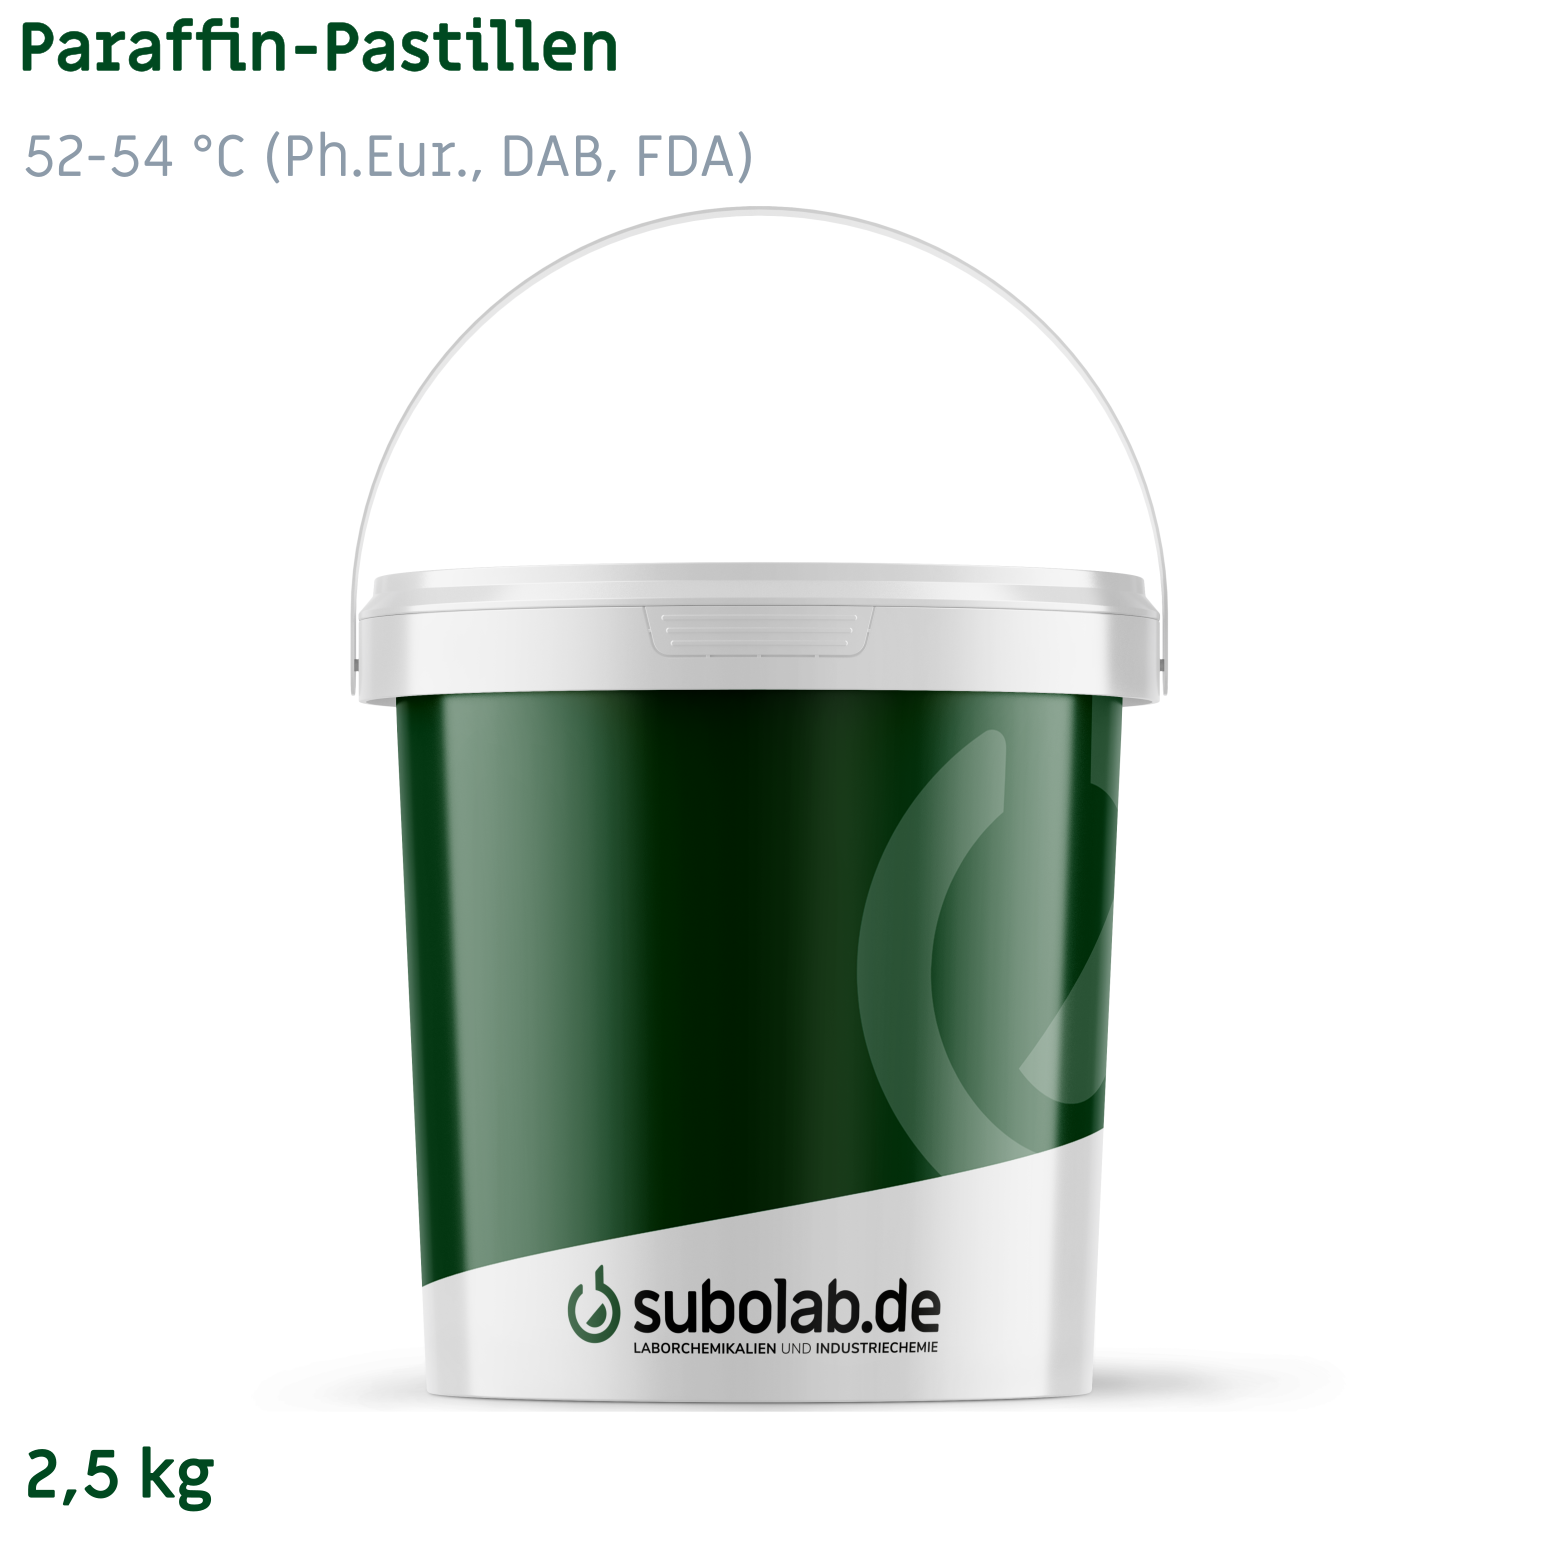 Bild von Paraffin - Pastillen 52-54 °C (Ph.Eur., DAB, FDA) (2,5 kg)